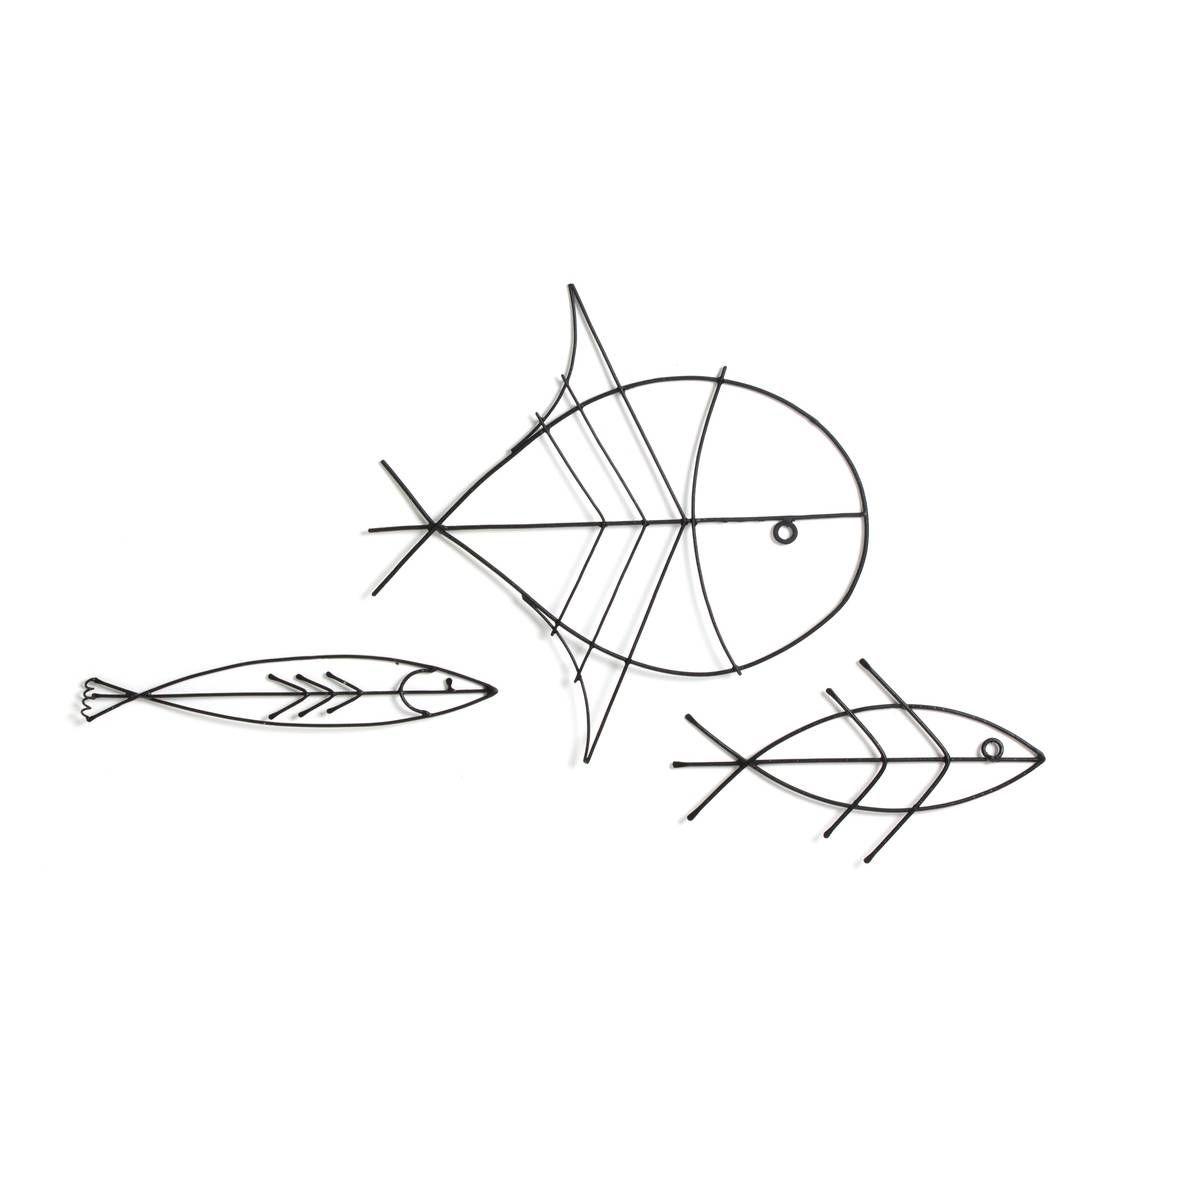 Mara Abatello: chi sono? Immagine con 3 pesci disegnati a mano